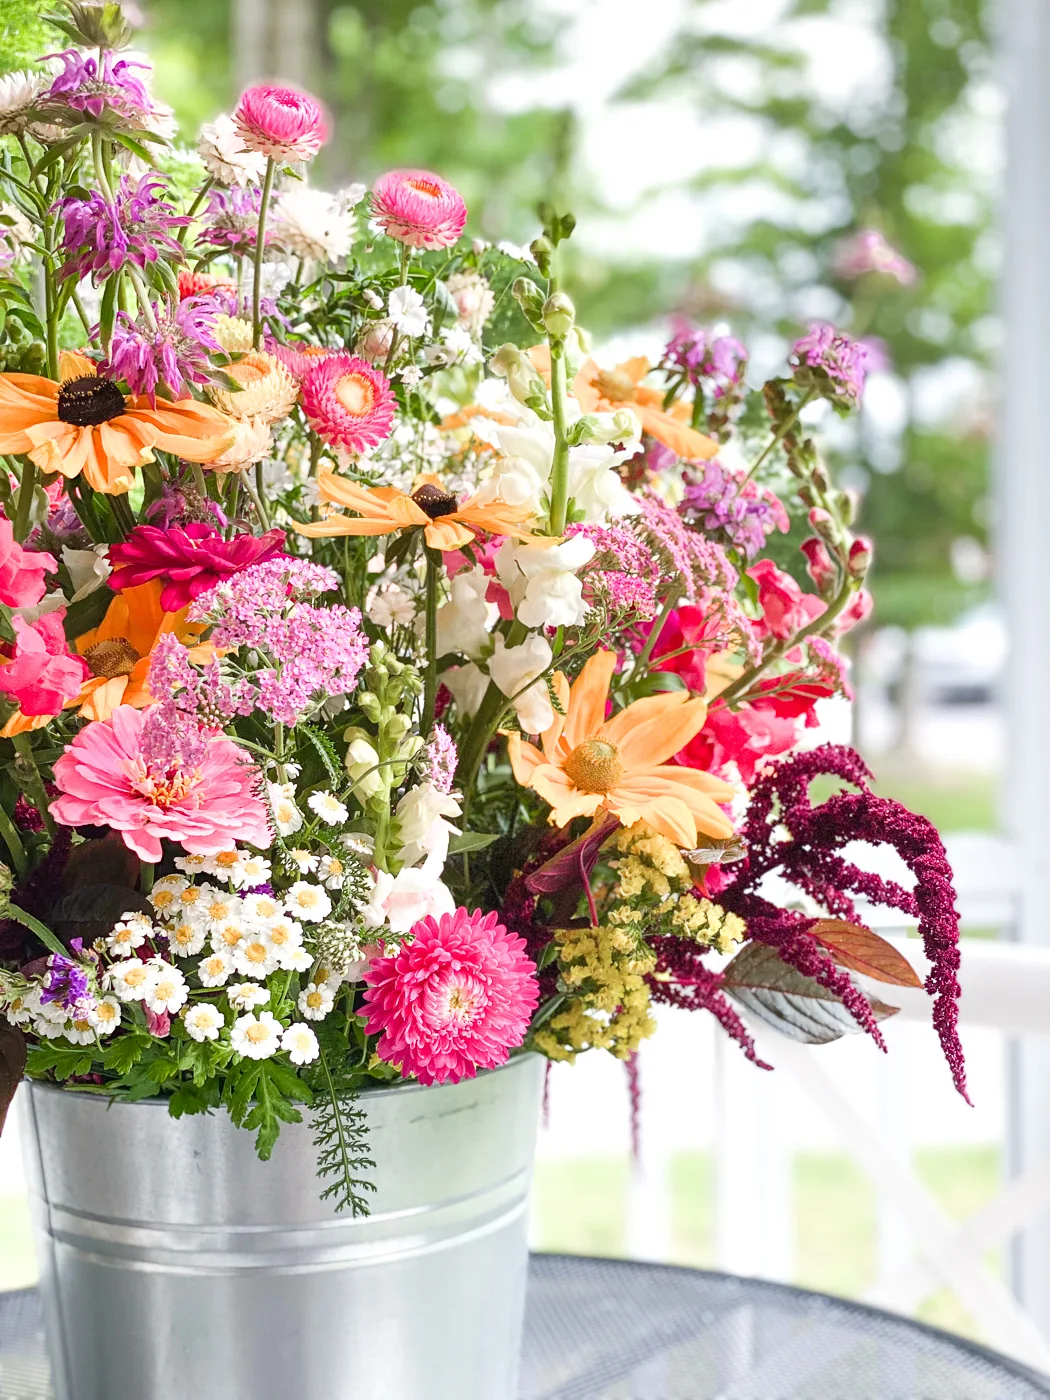 cut flower arrangement, flowers from a cutting garden, summer garden flowers